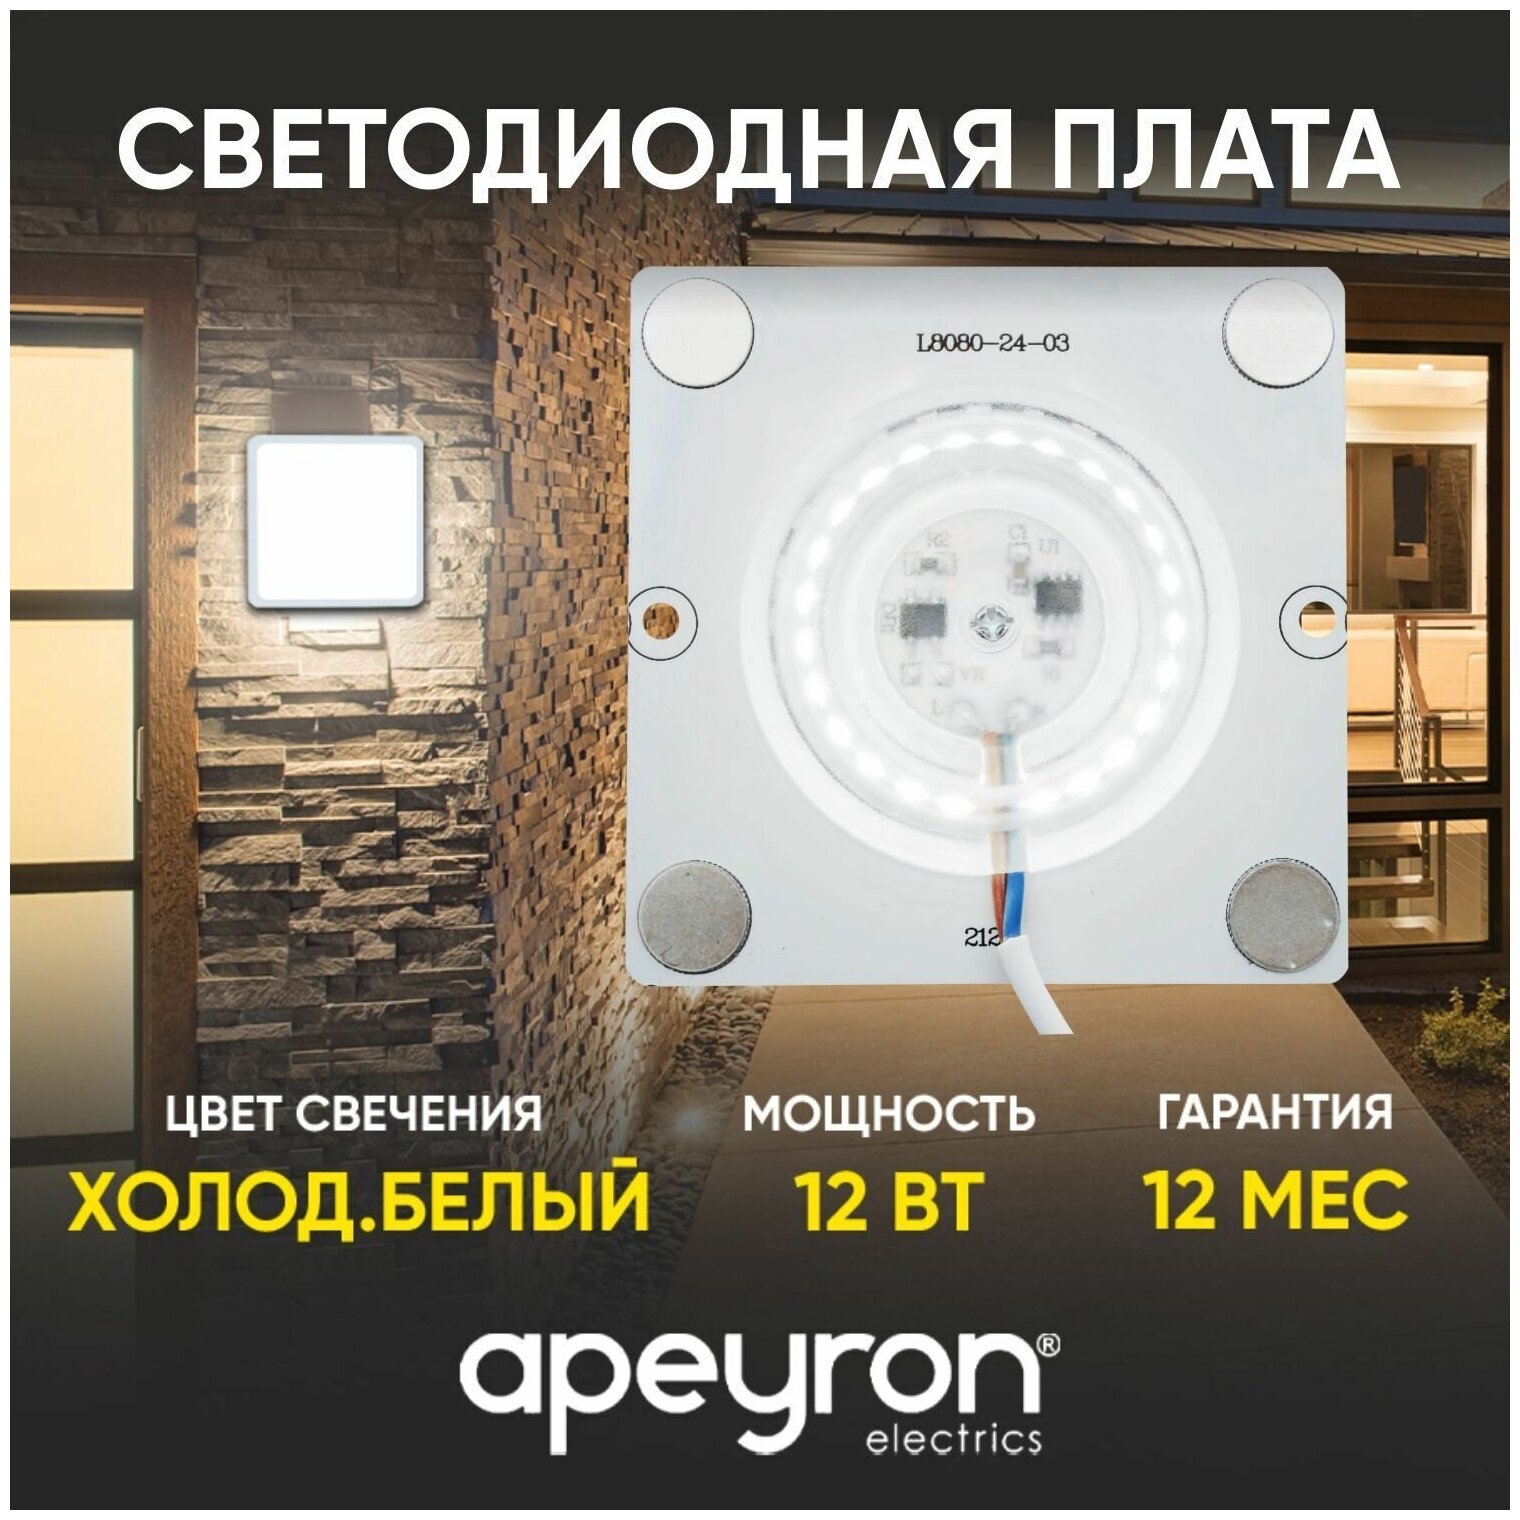 Плата светодиодная для интерьерного света Apeyron 02-20 мощностью 12 Ватт. Влагозащита IP20, цветовая температура 6500К, световой поток 960 Лм, рабочее напряжение 220В, размер 80х80 мм.